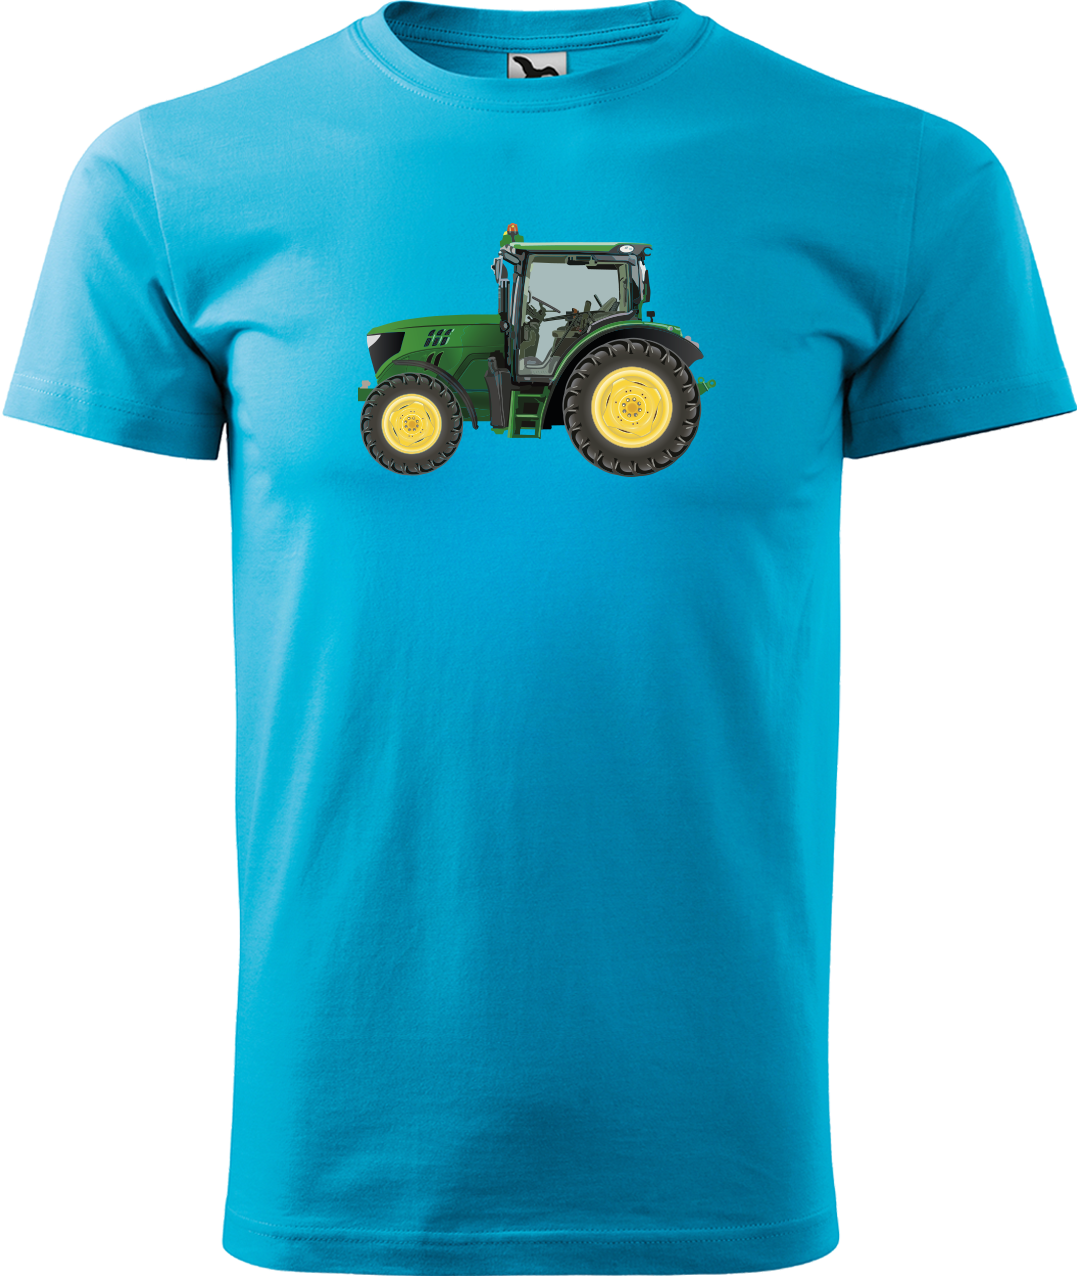 Tričko s traktorem - Zelený traktor Velikost: L, Barva: Tyrkysová (44)